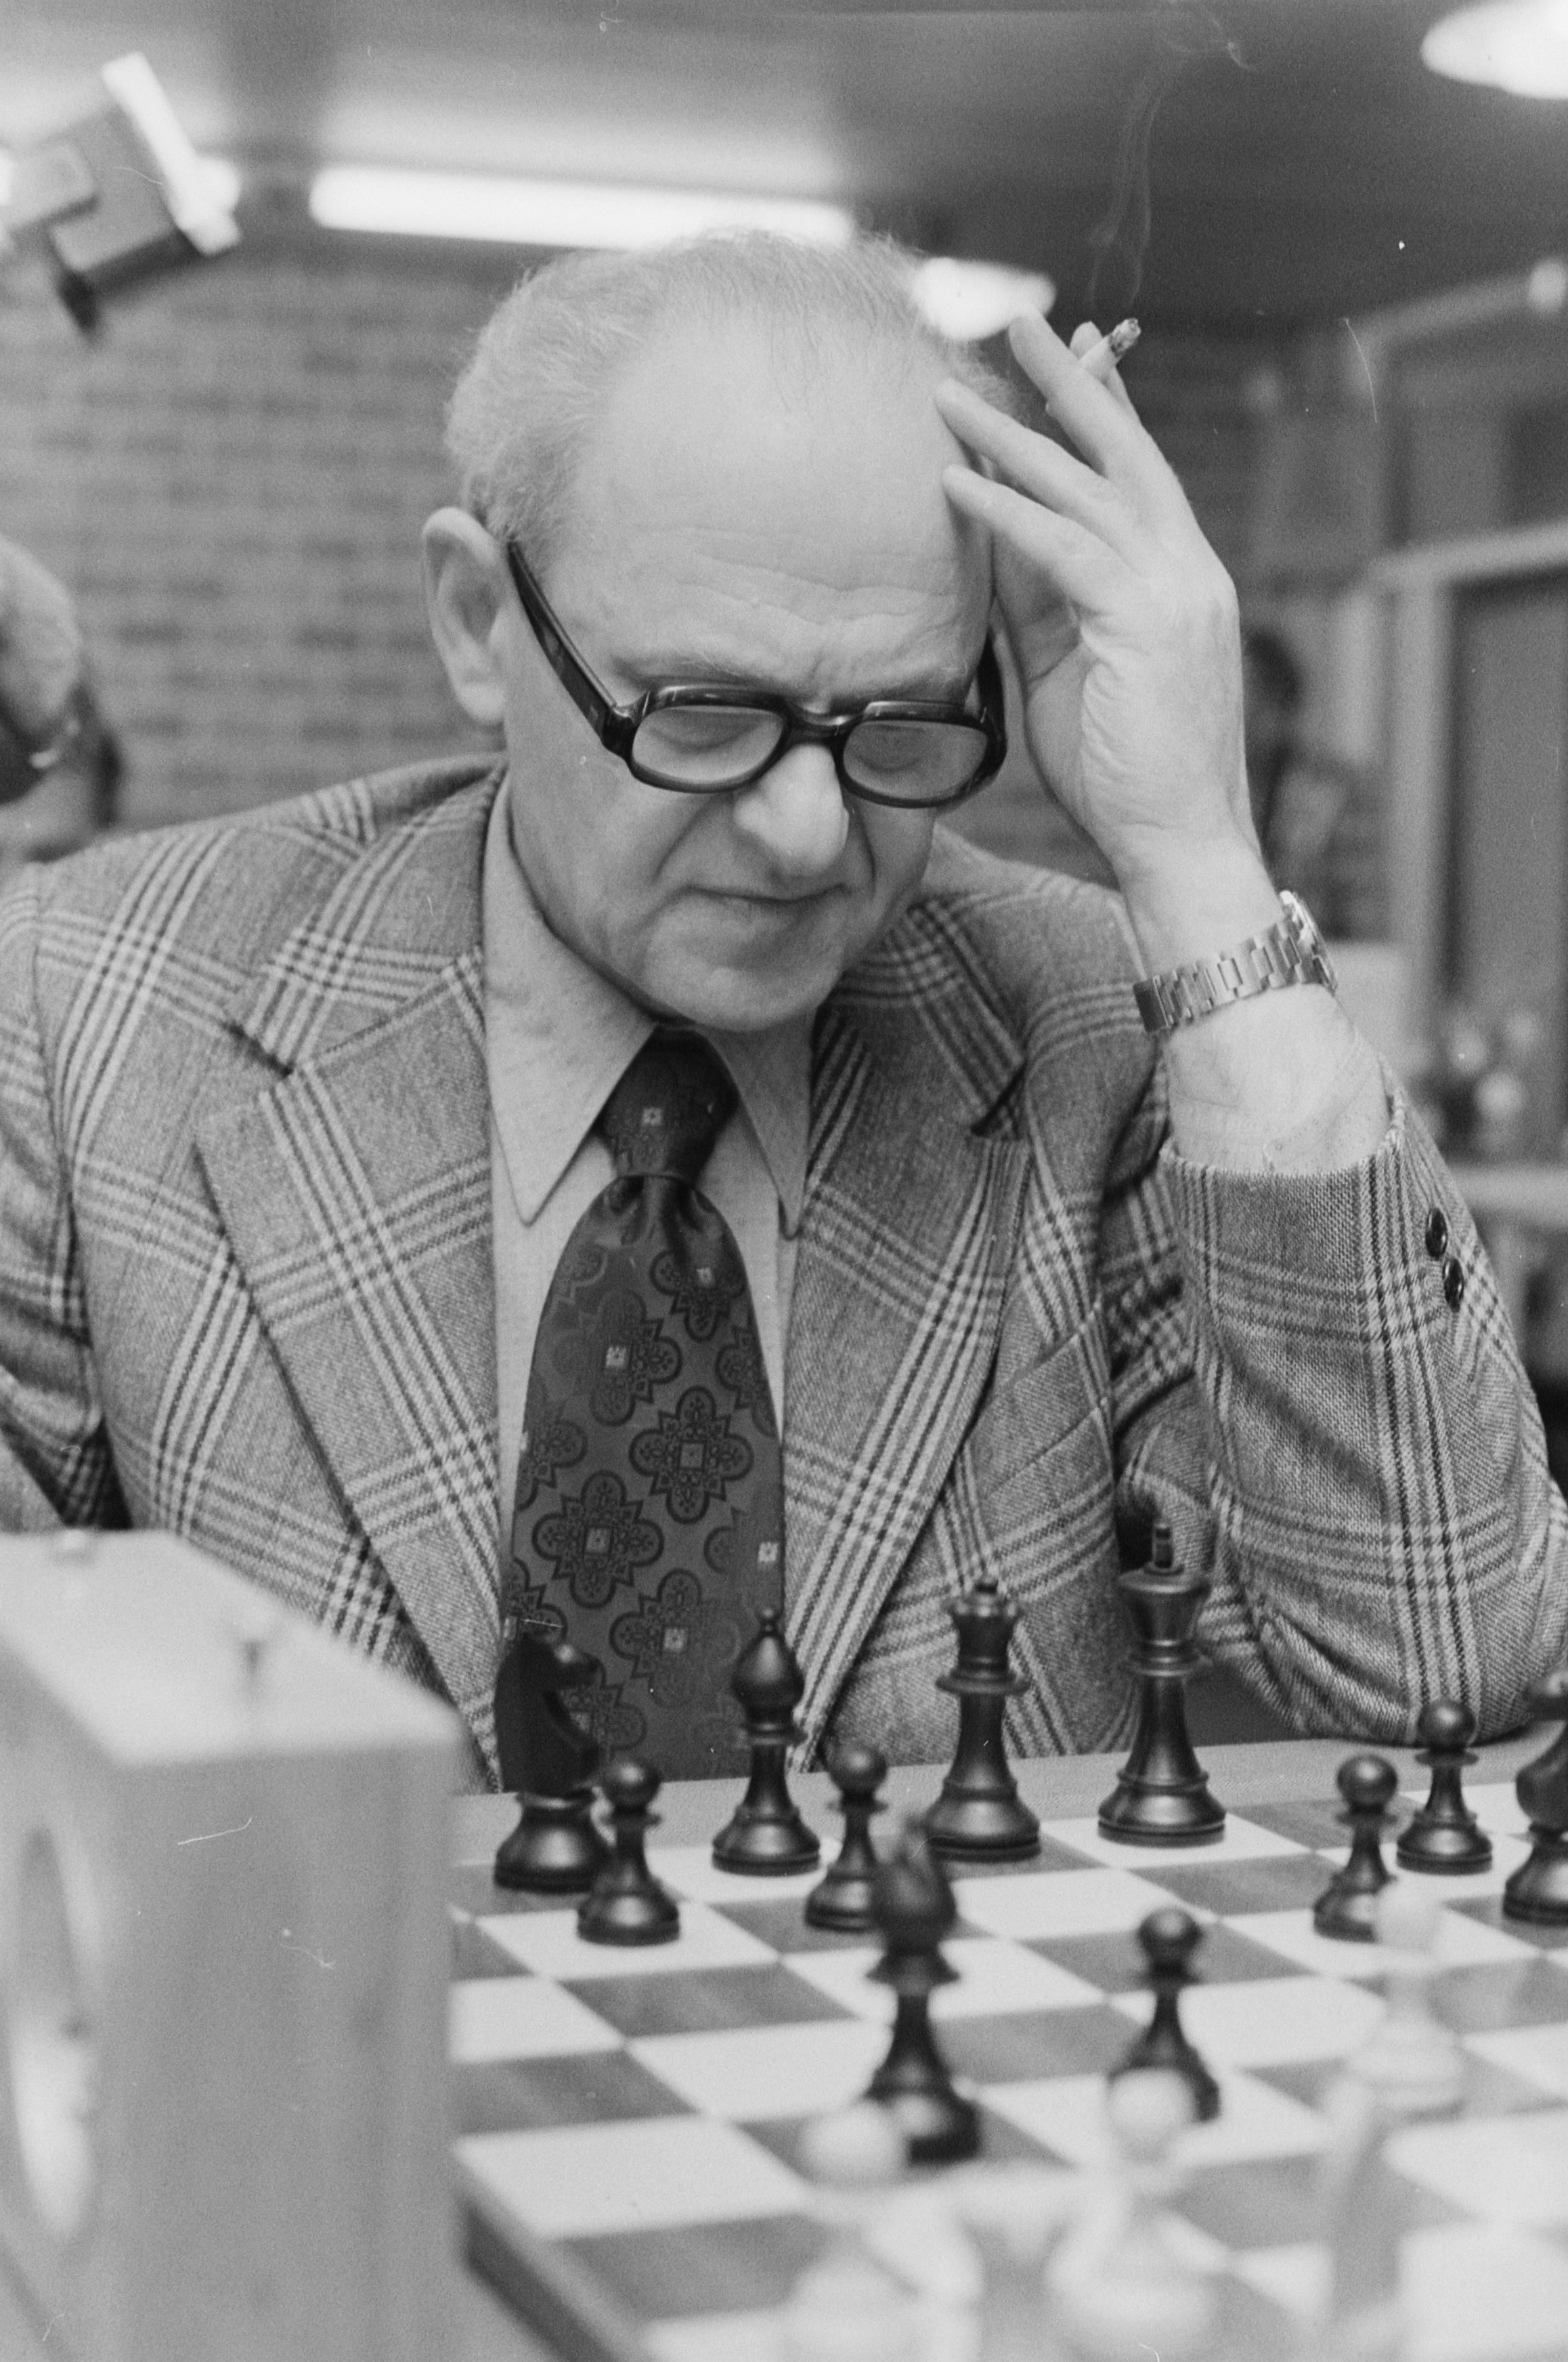 The Petrosian-Spassky World Championship Match (Moscow, 1969), with  annotations by Tal, Korchnoi, Boleslavsky & Bondarevsky.